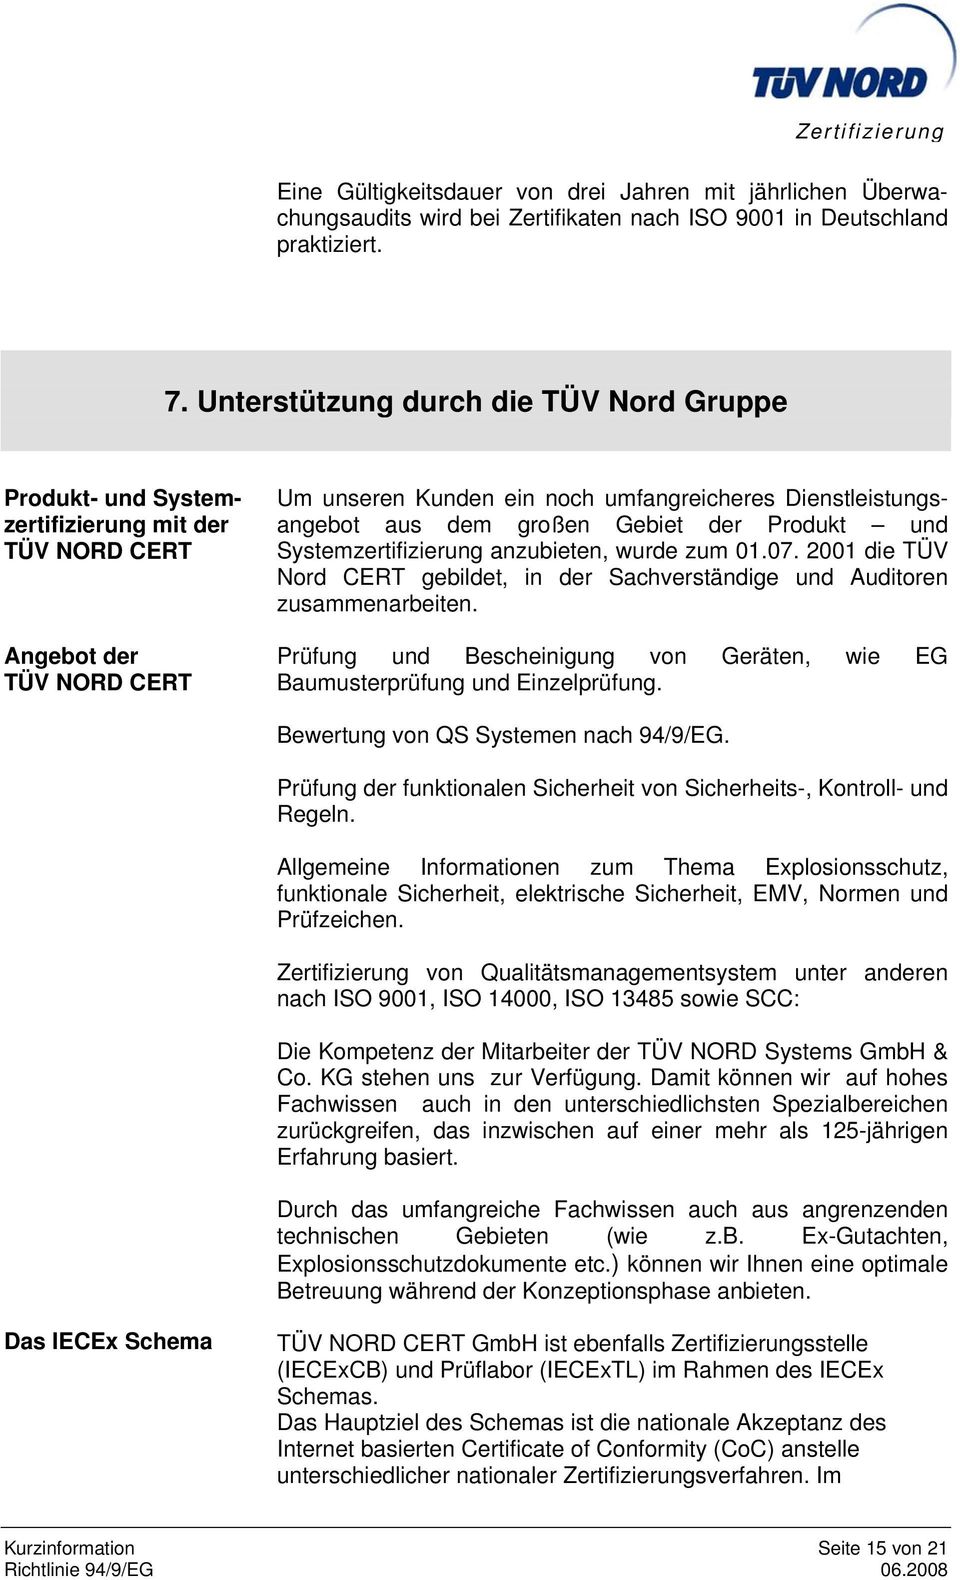 großen Gebiet der Produkt und Systemzertifizierung anzubieten, wurde zum 01.07. 2001 die TÜV Nord CERT gebildet, in der Sachverständige und Auditoren zusammenarbeiten.